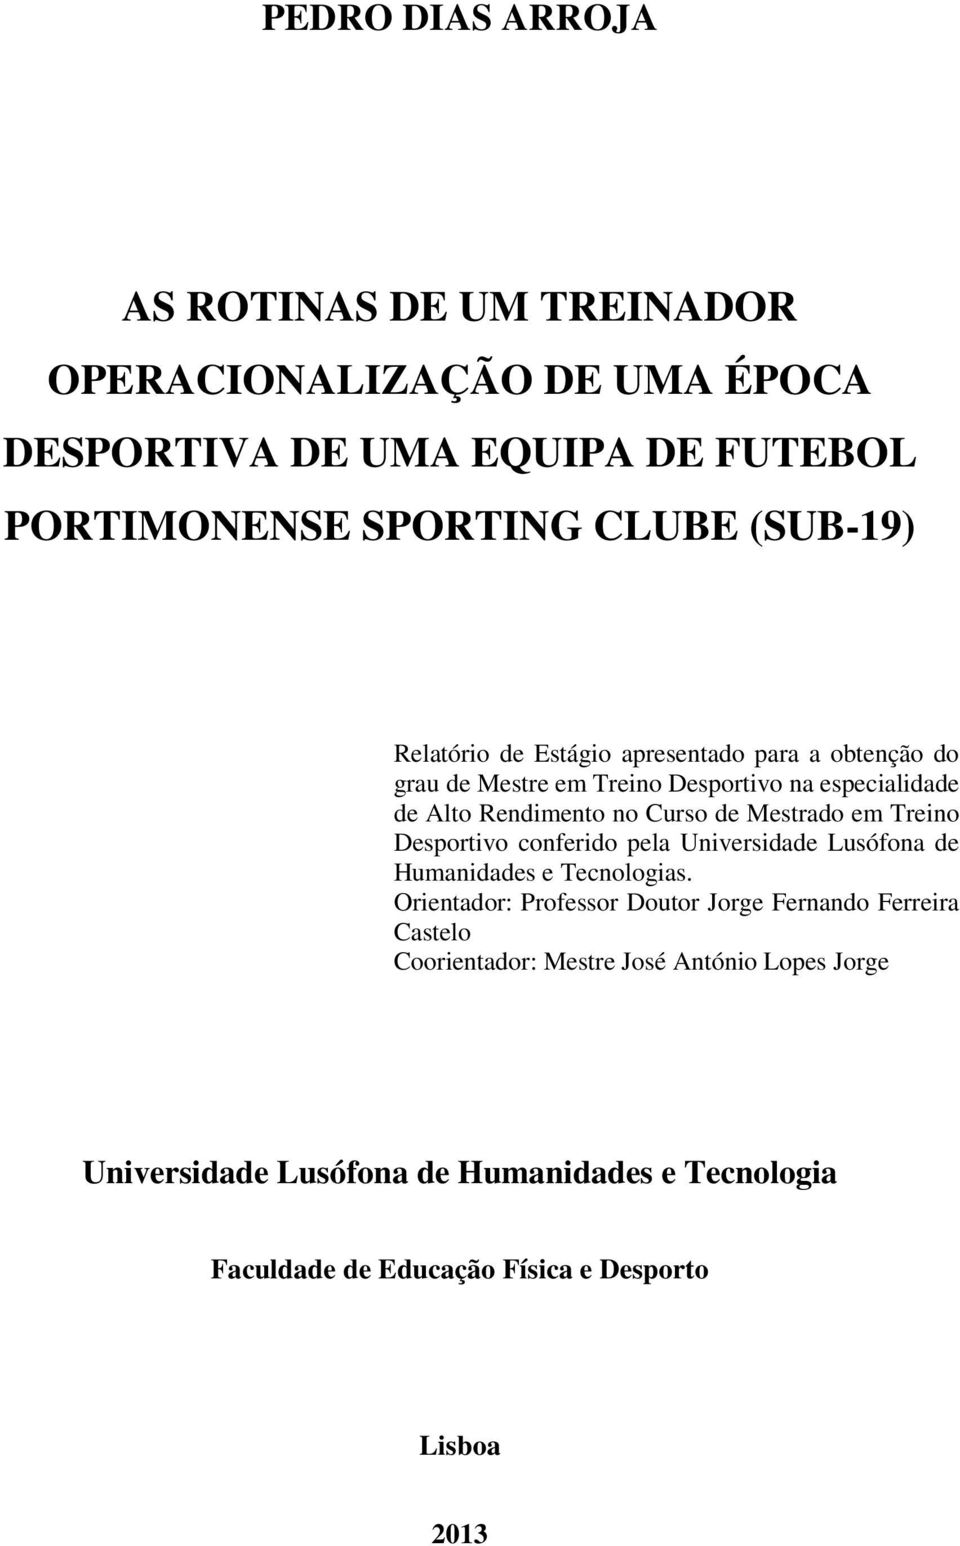 Mestrado em Treino Desportivo conferido pela Universidade Lusófona de Humanidades e Tecnologias.